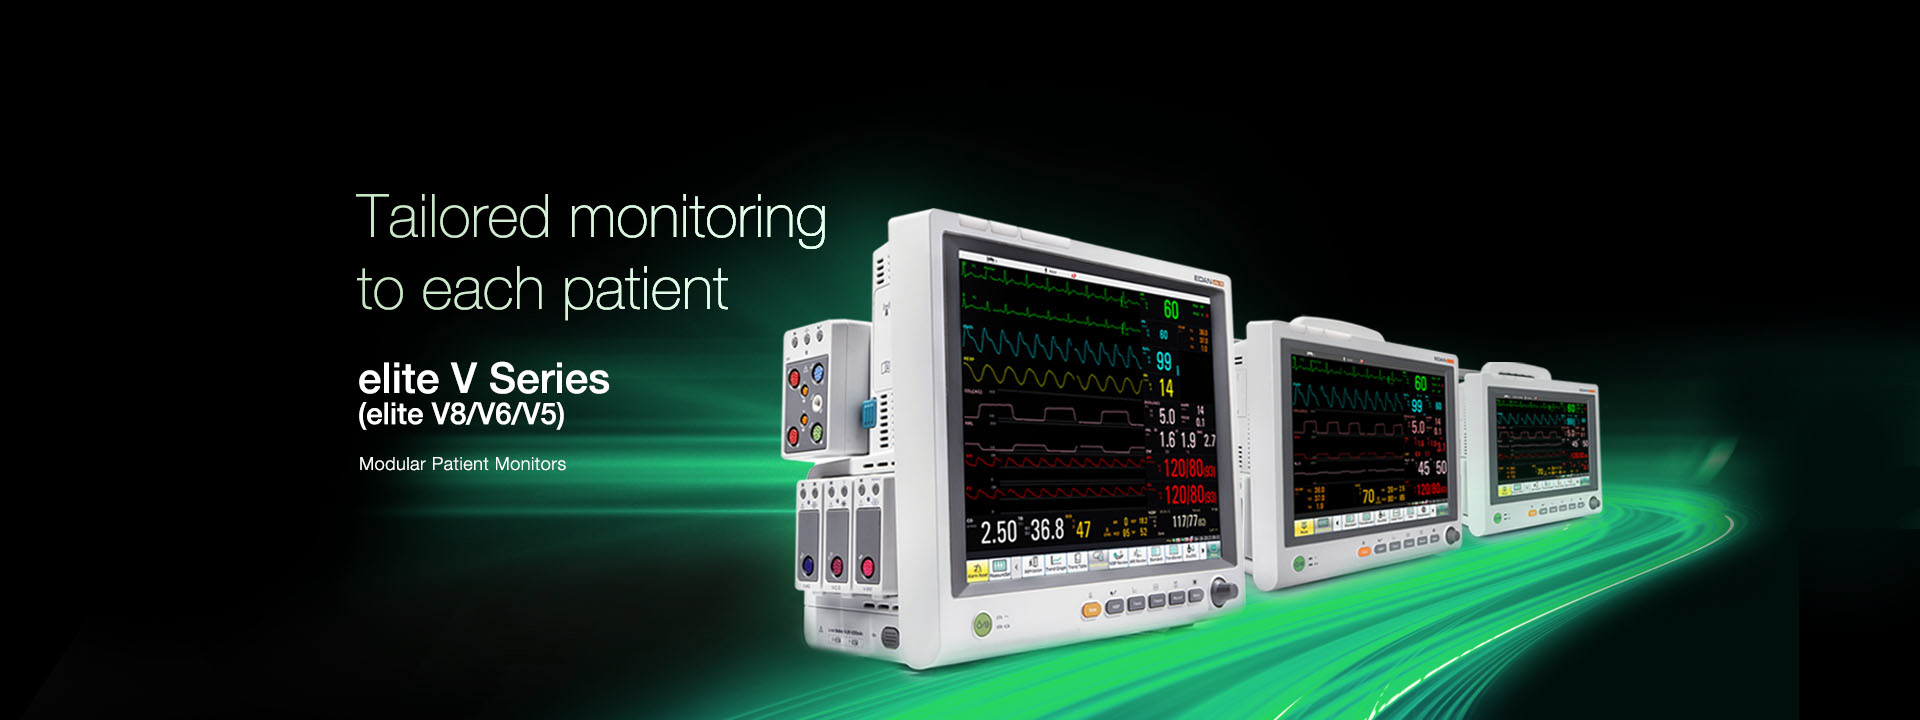 เครื่องติดตามการทำงานของหัวใจและสัญญาณชีพอัตโนมัติ  Elite V Series ( elite V8/V6/V5 ) Modular Patient Monitors  EDAN